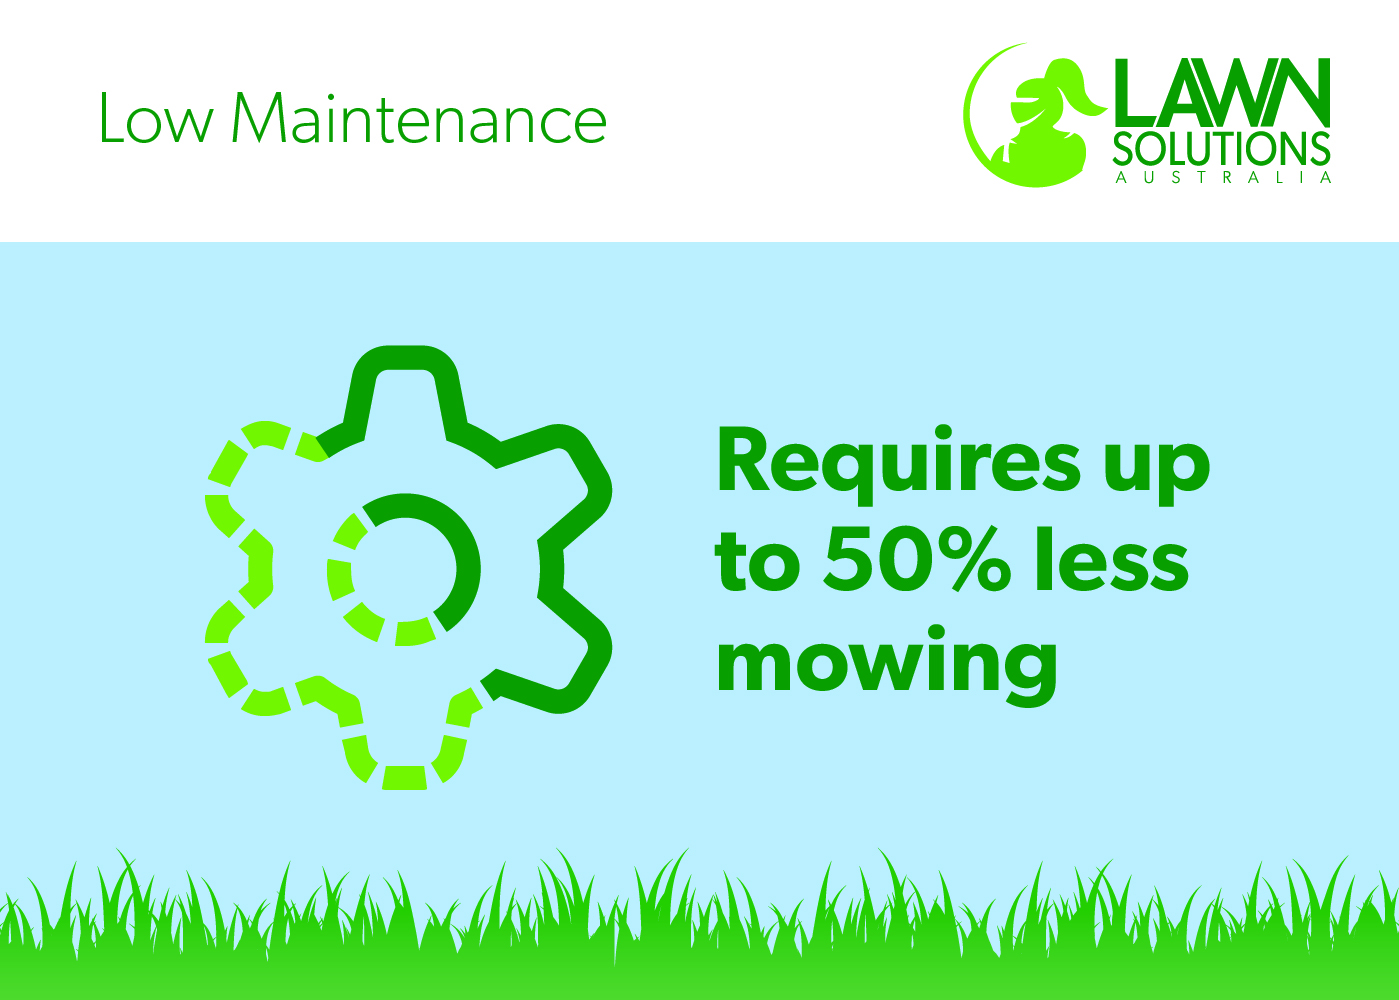 Low maintenance lawn grass in Australia